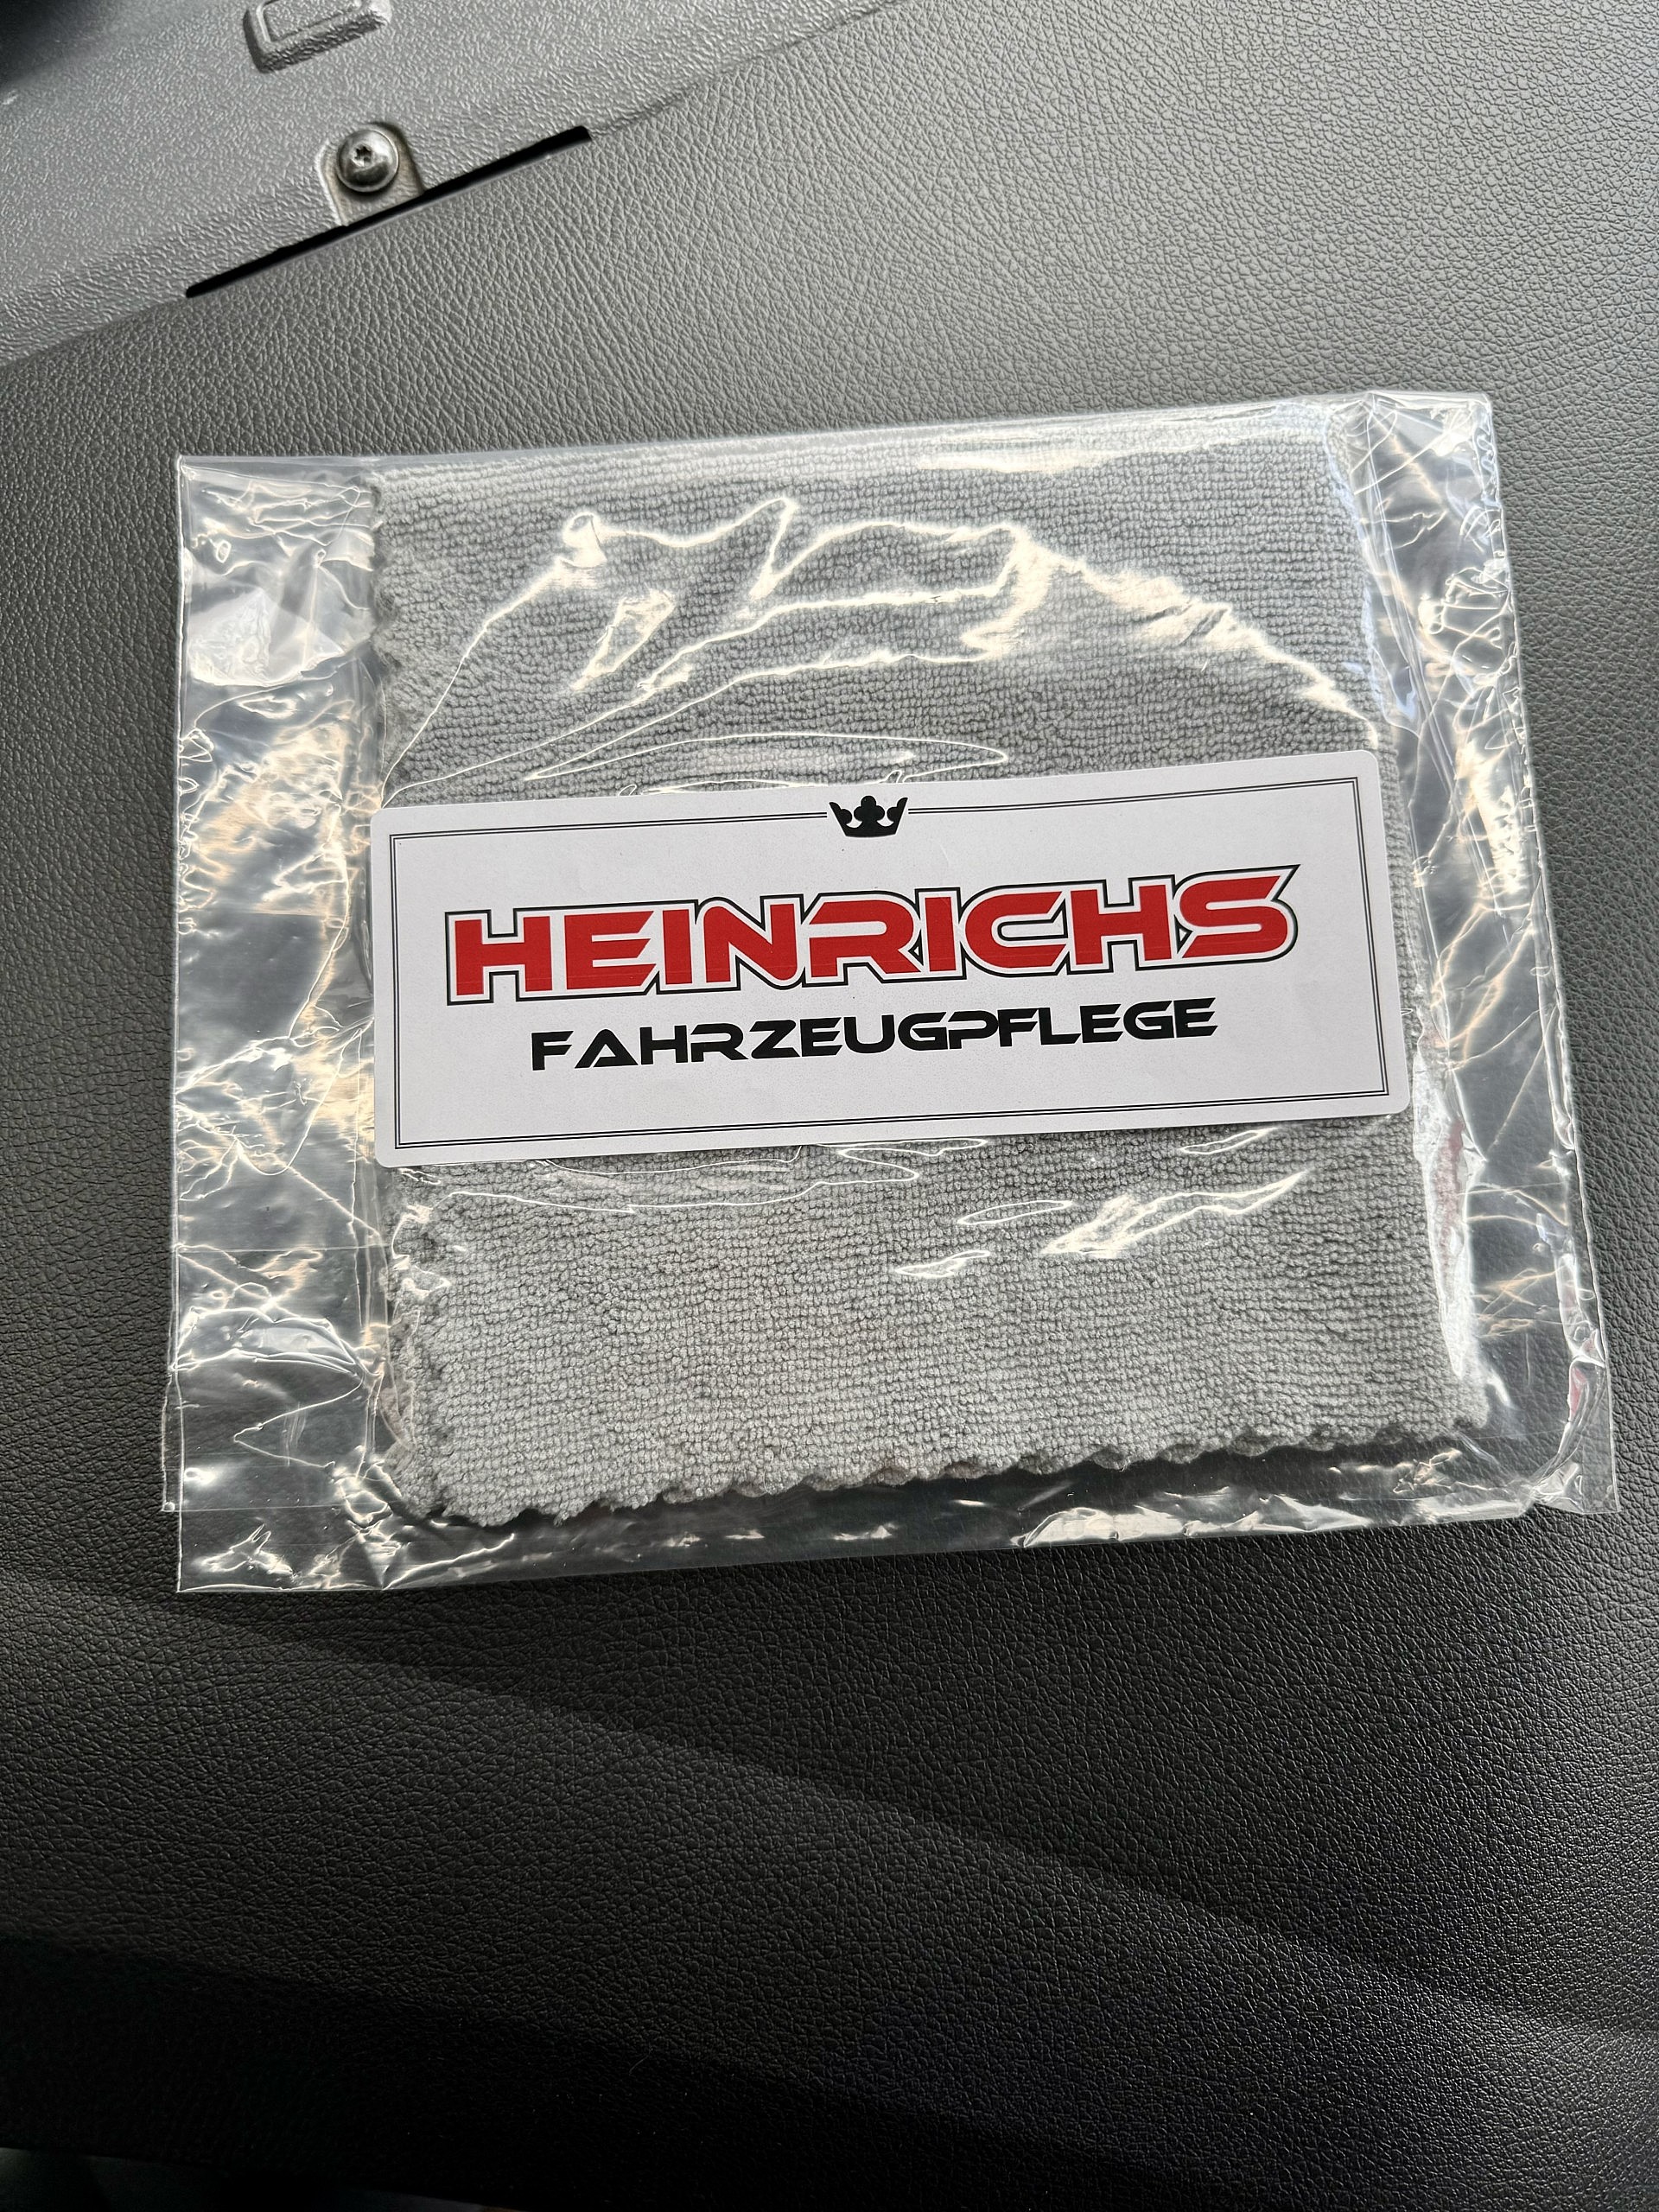 Heinrichs Mikrofasertuch randlos auf Armaturenbrett.jpeg